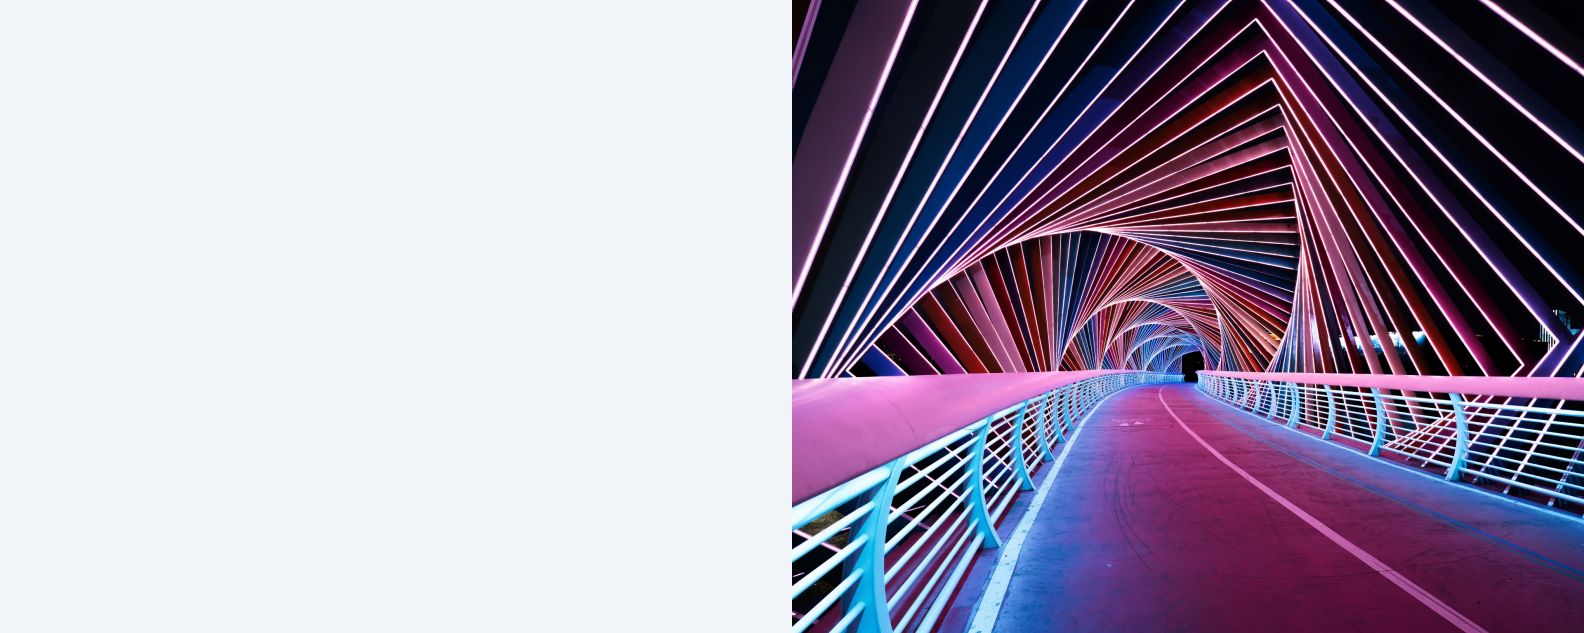 여러 색상의 도로와 터널을 묘사한 그래픽 일러스트